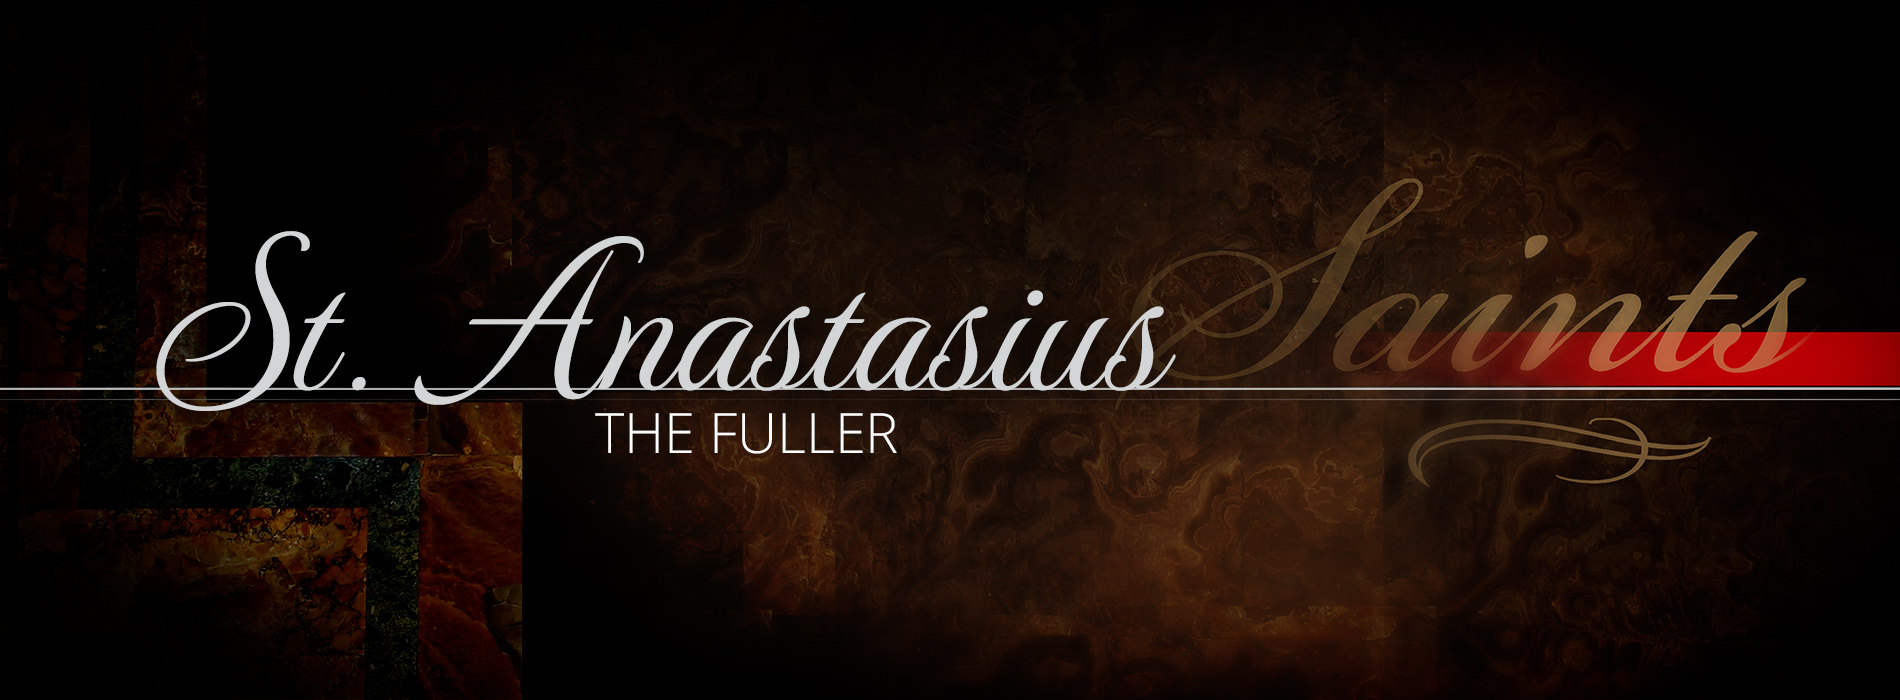 St. Anastasius the Fuller